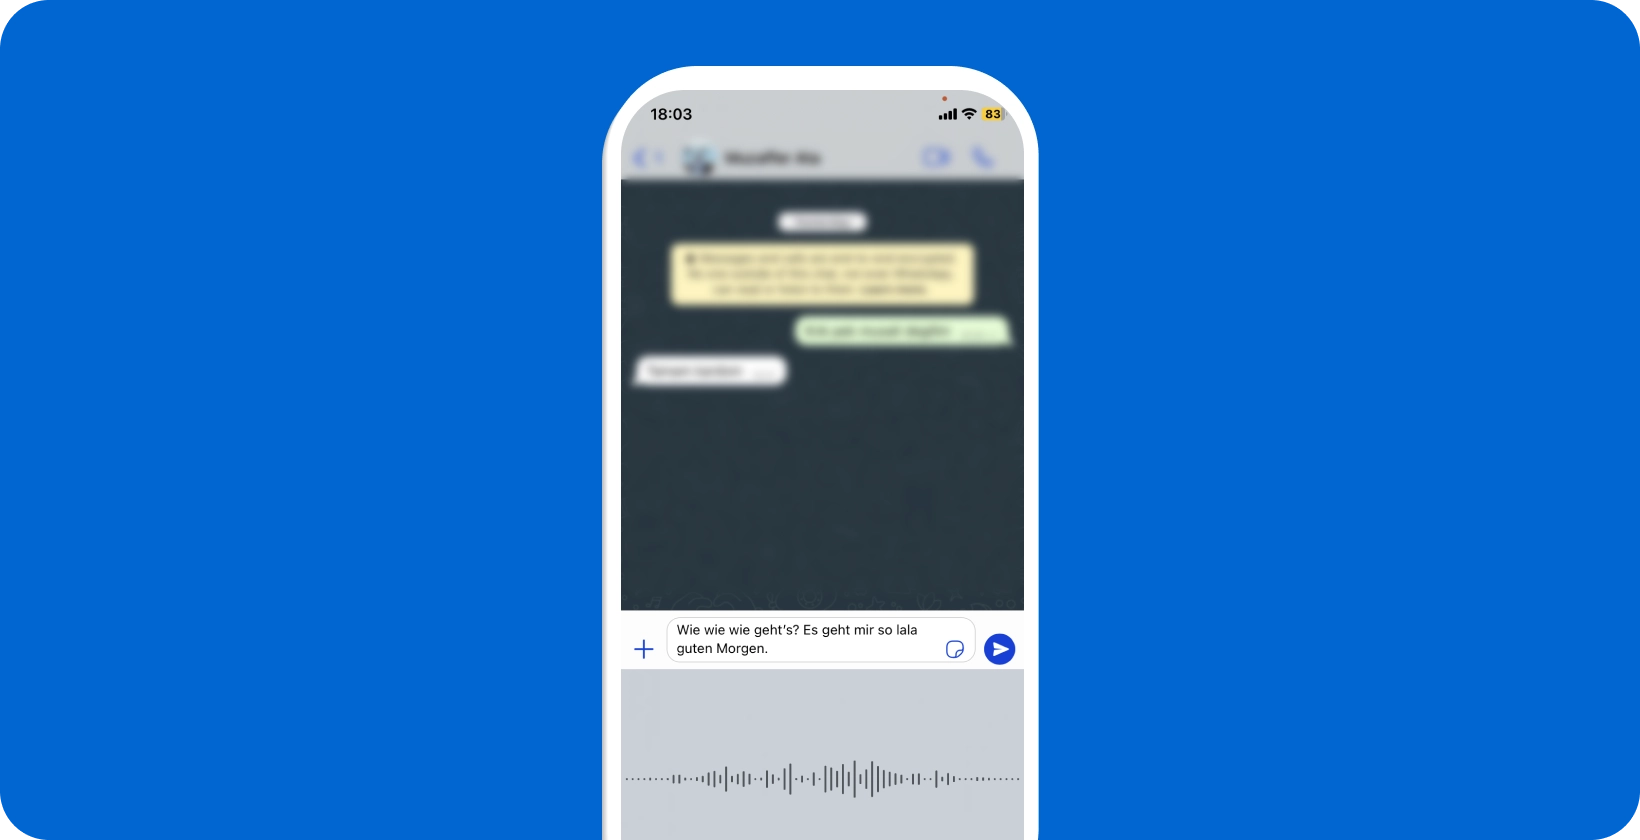 Išmanusis telefonas, rodantis WhatsApp vykdomą diktavimą balsu, demonstruojantis kalbos konvertavimą į tekstą realiuoju laiku.